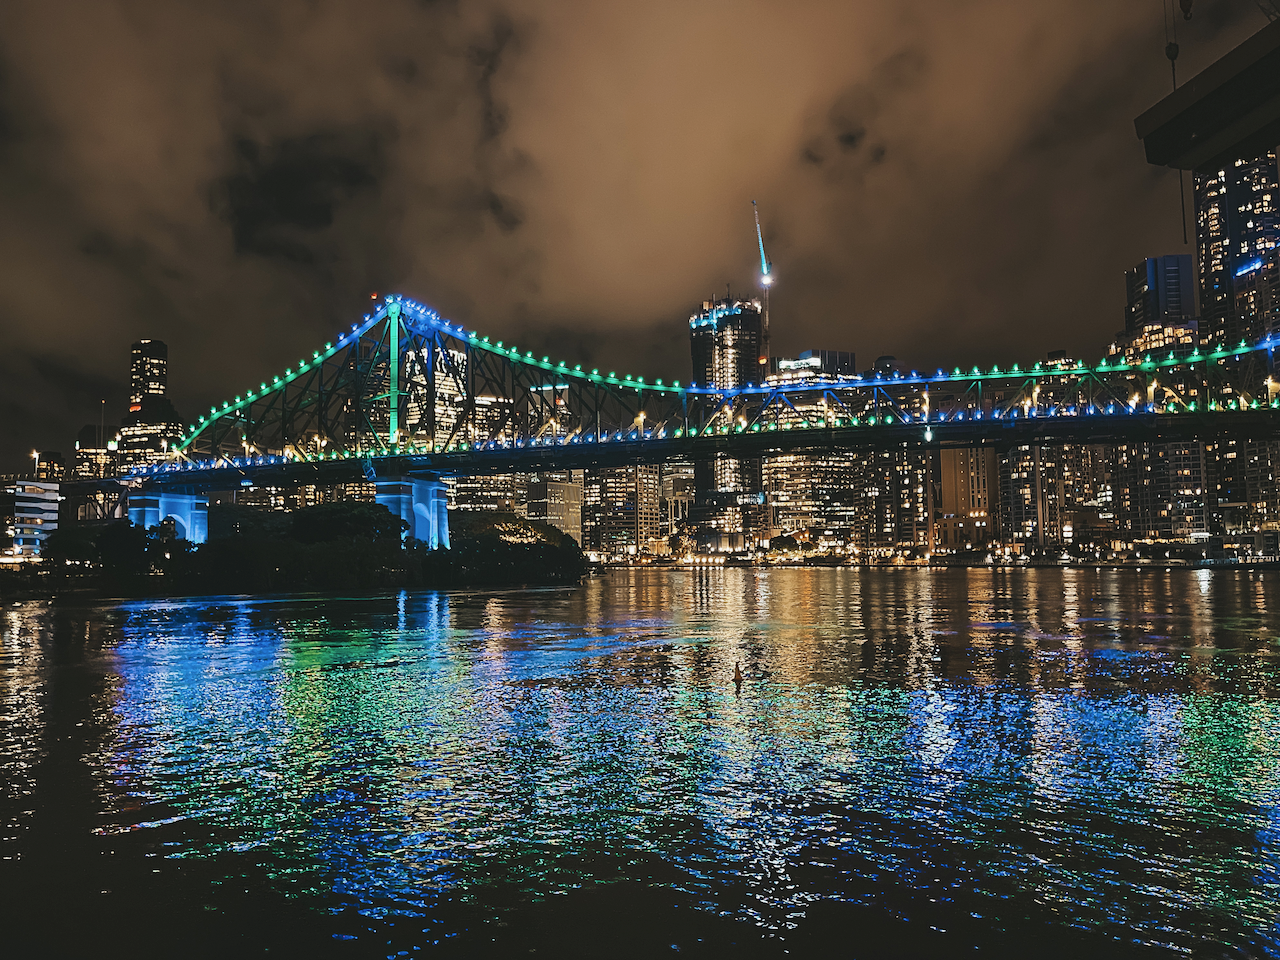 Le pont Story Bridge illuminé de nuit - Brisbane - Queensland - Australie